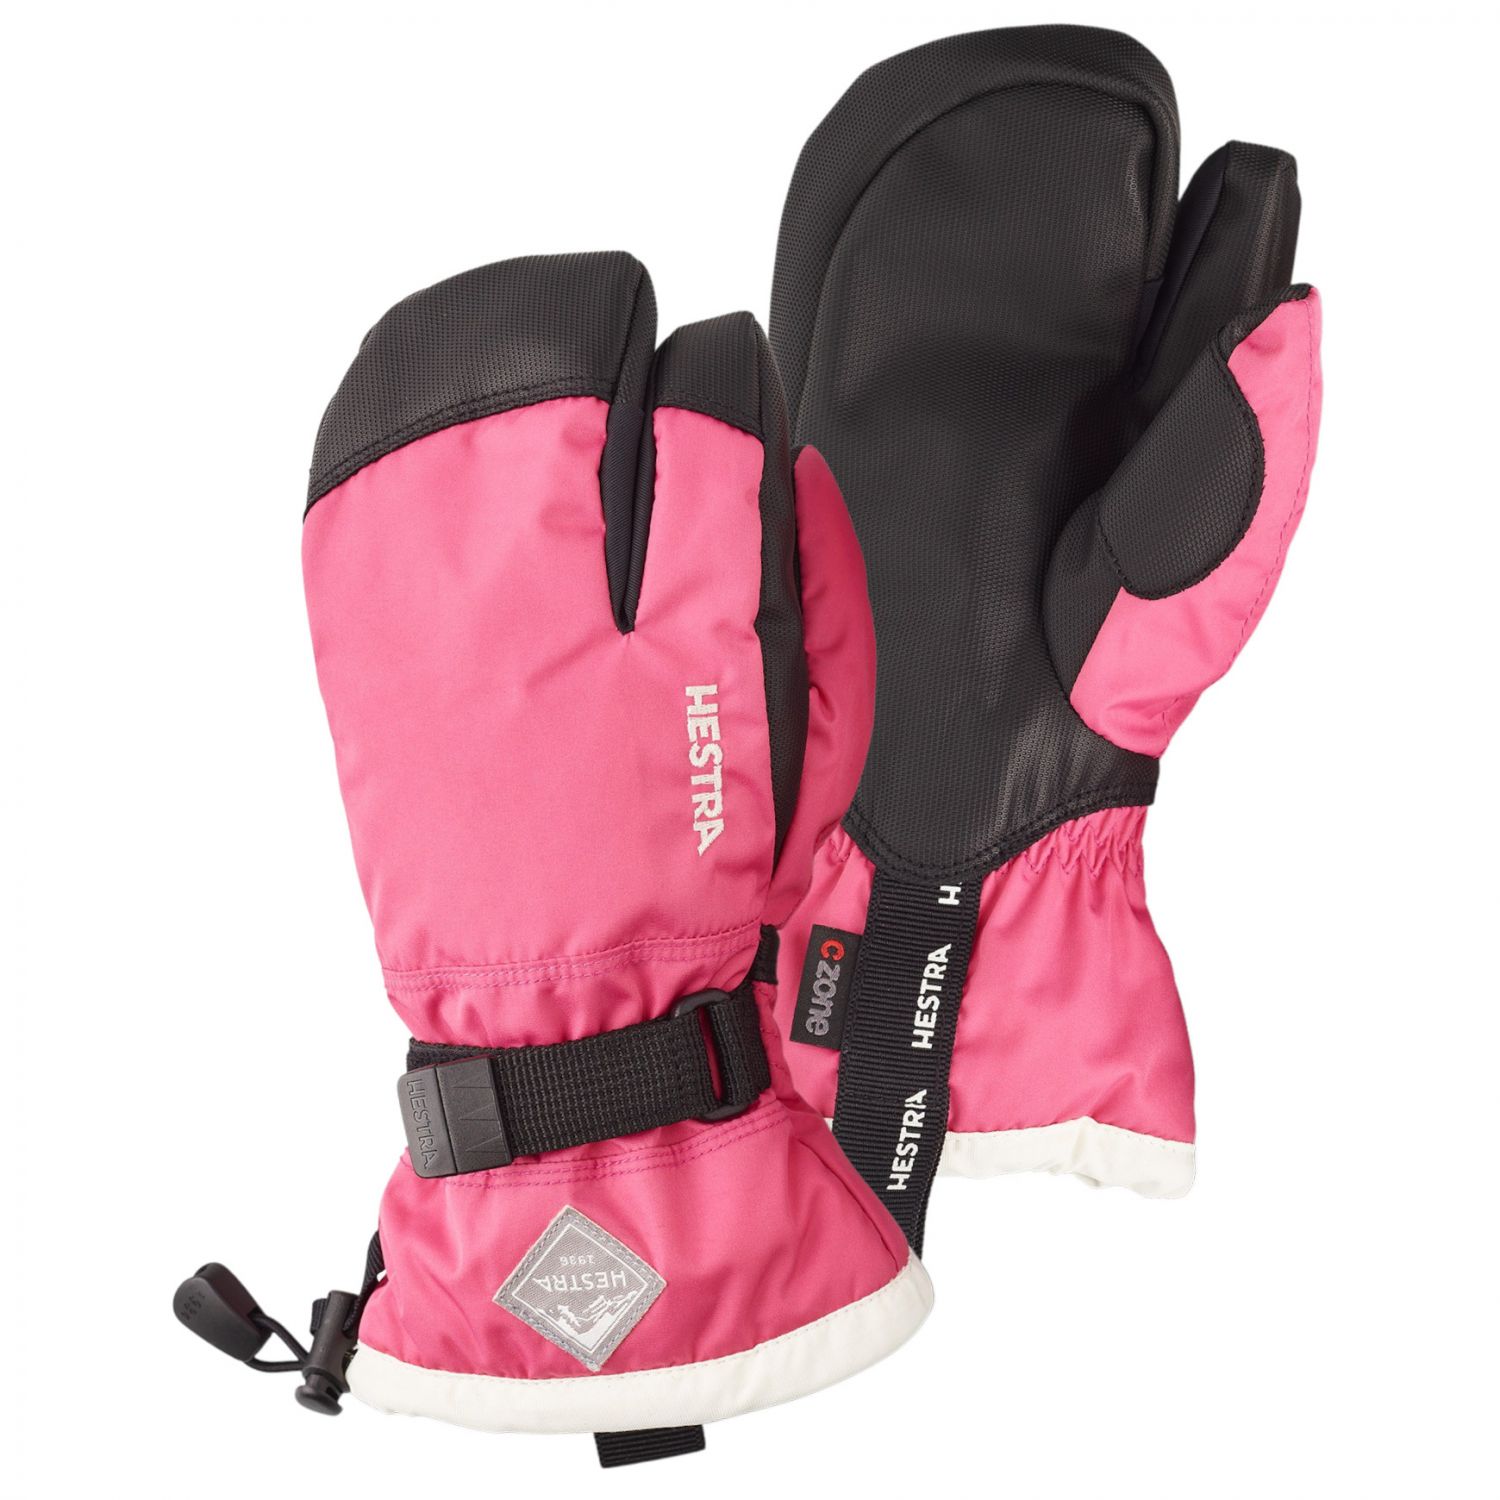 Billede af Hestra Gauntlet 3-finger skihandsker, junior, pink hos Skisport.dk